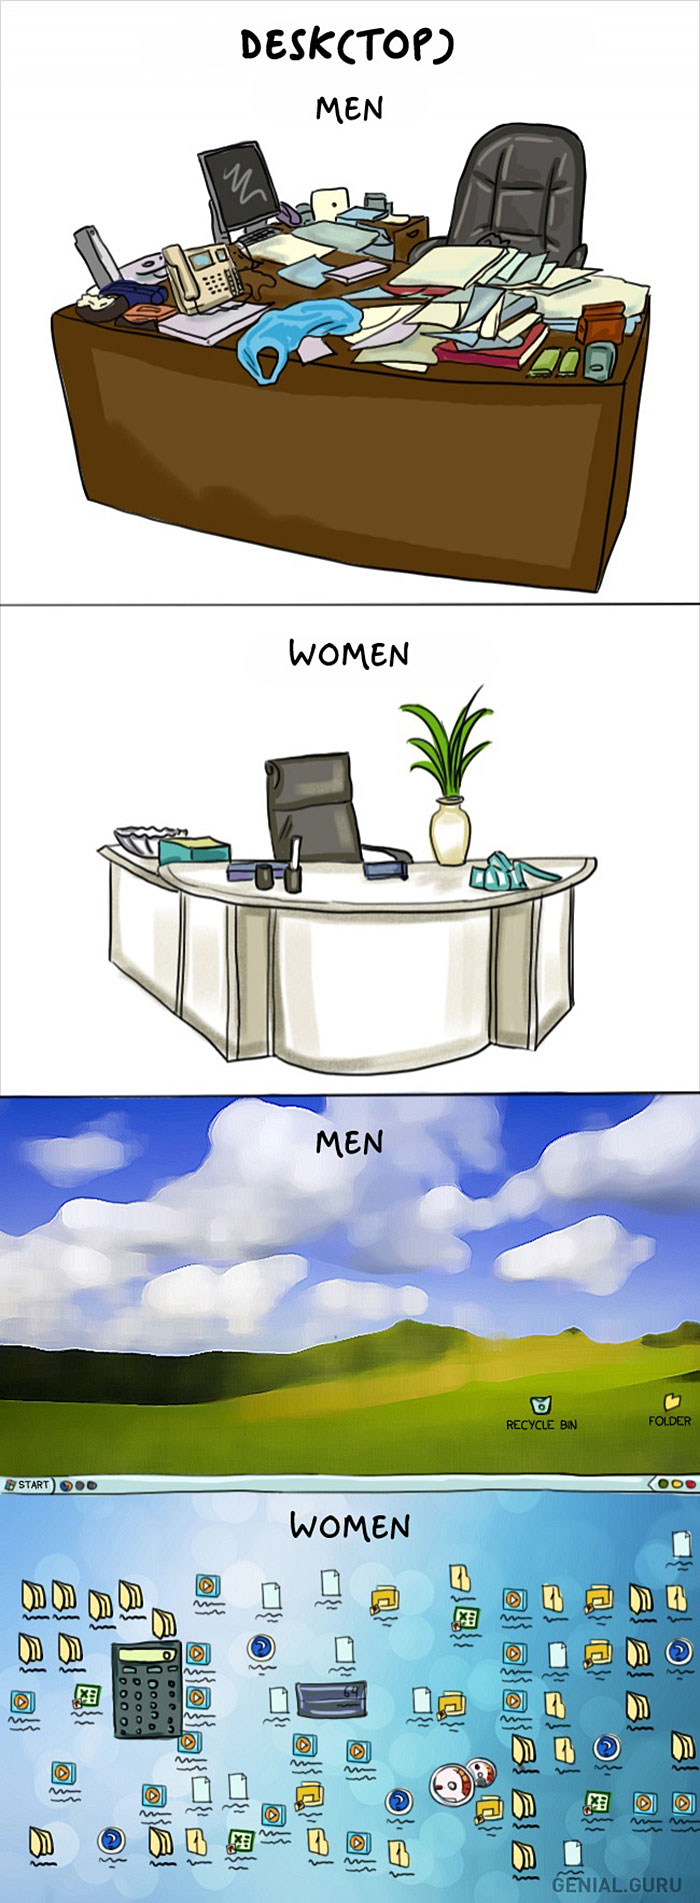 men-vs-women-différences-au-quotidien